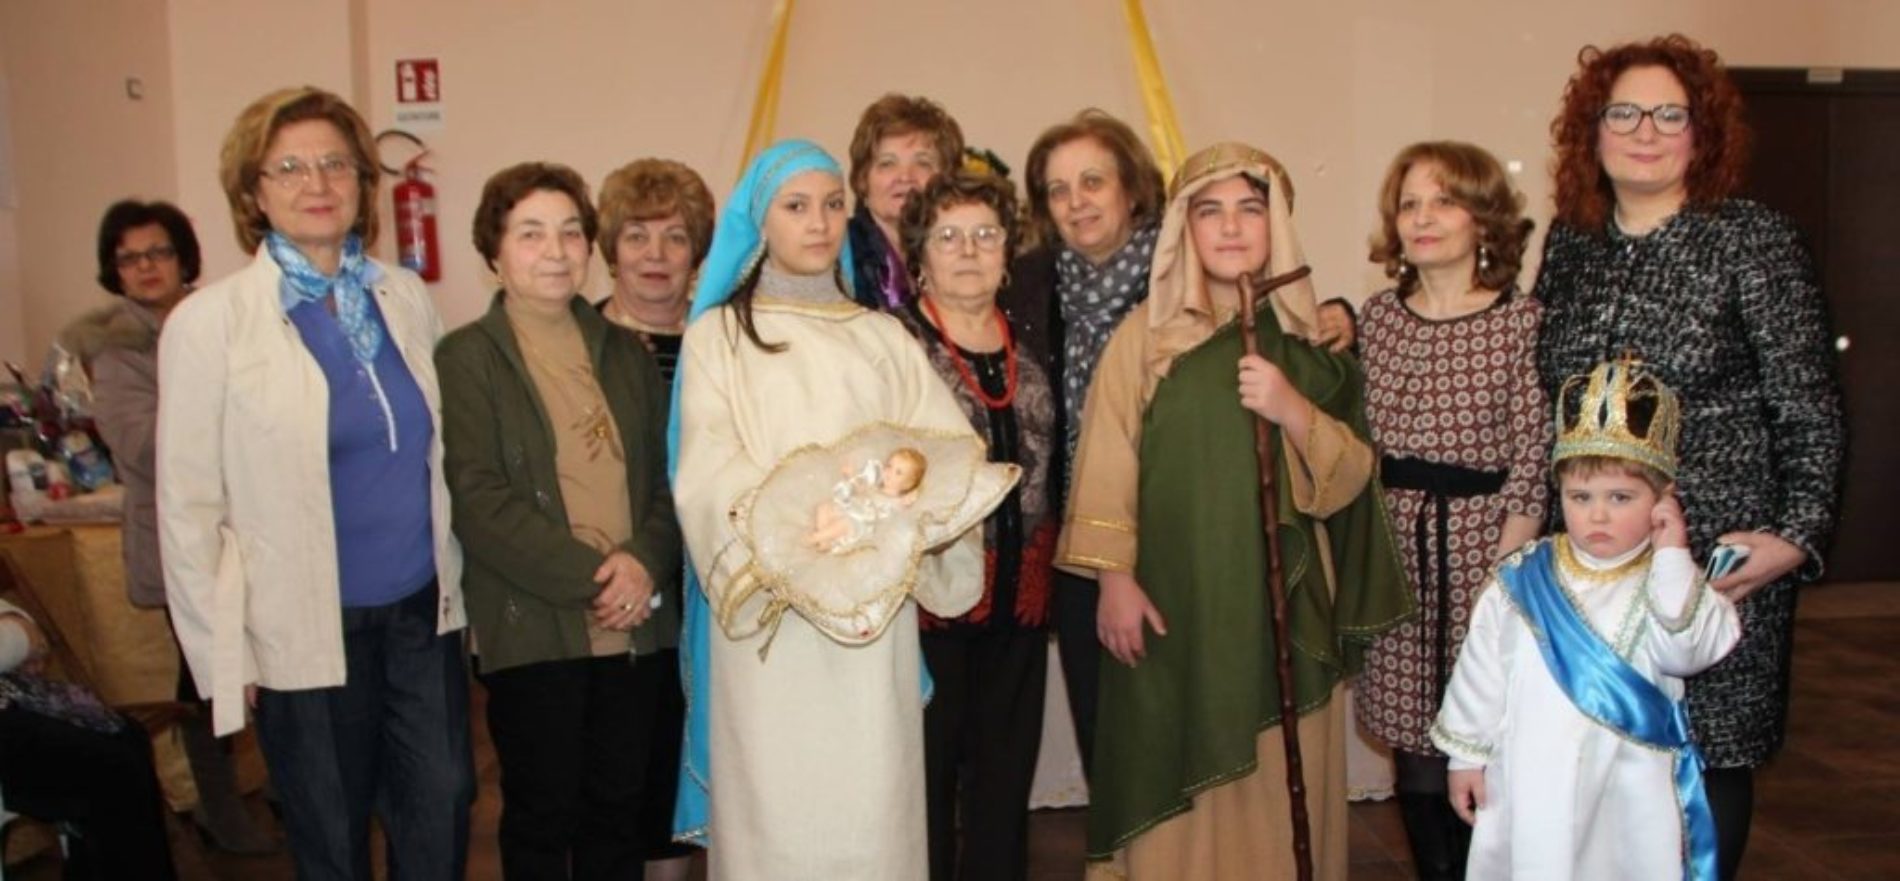 Associazione Donne “Maria Santissima della Stella” organizza tavolata di San Giuseppe per donare alimenti al banco alimentare